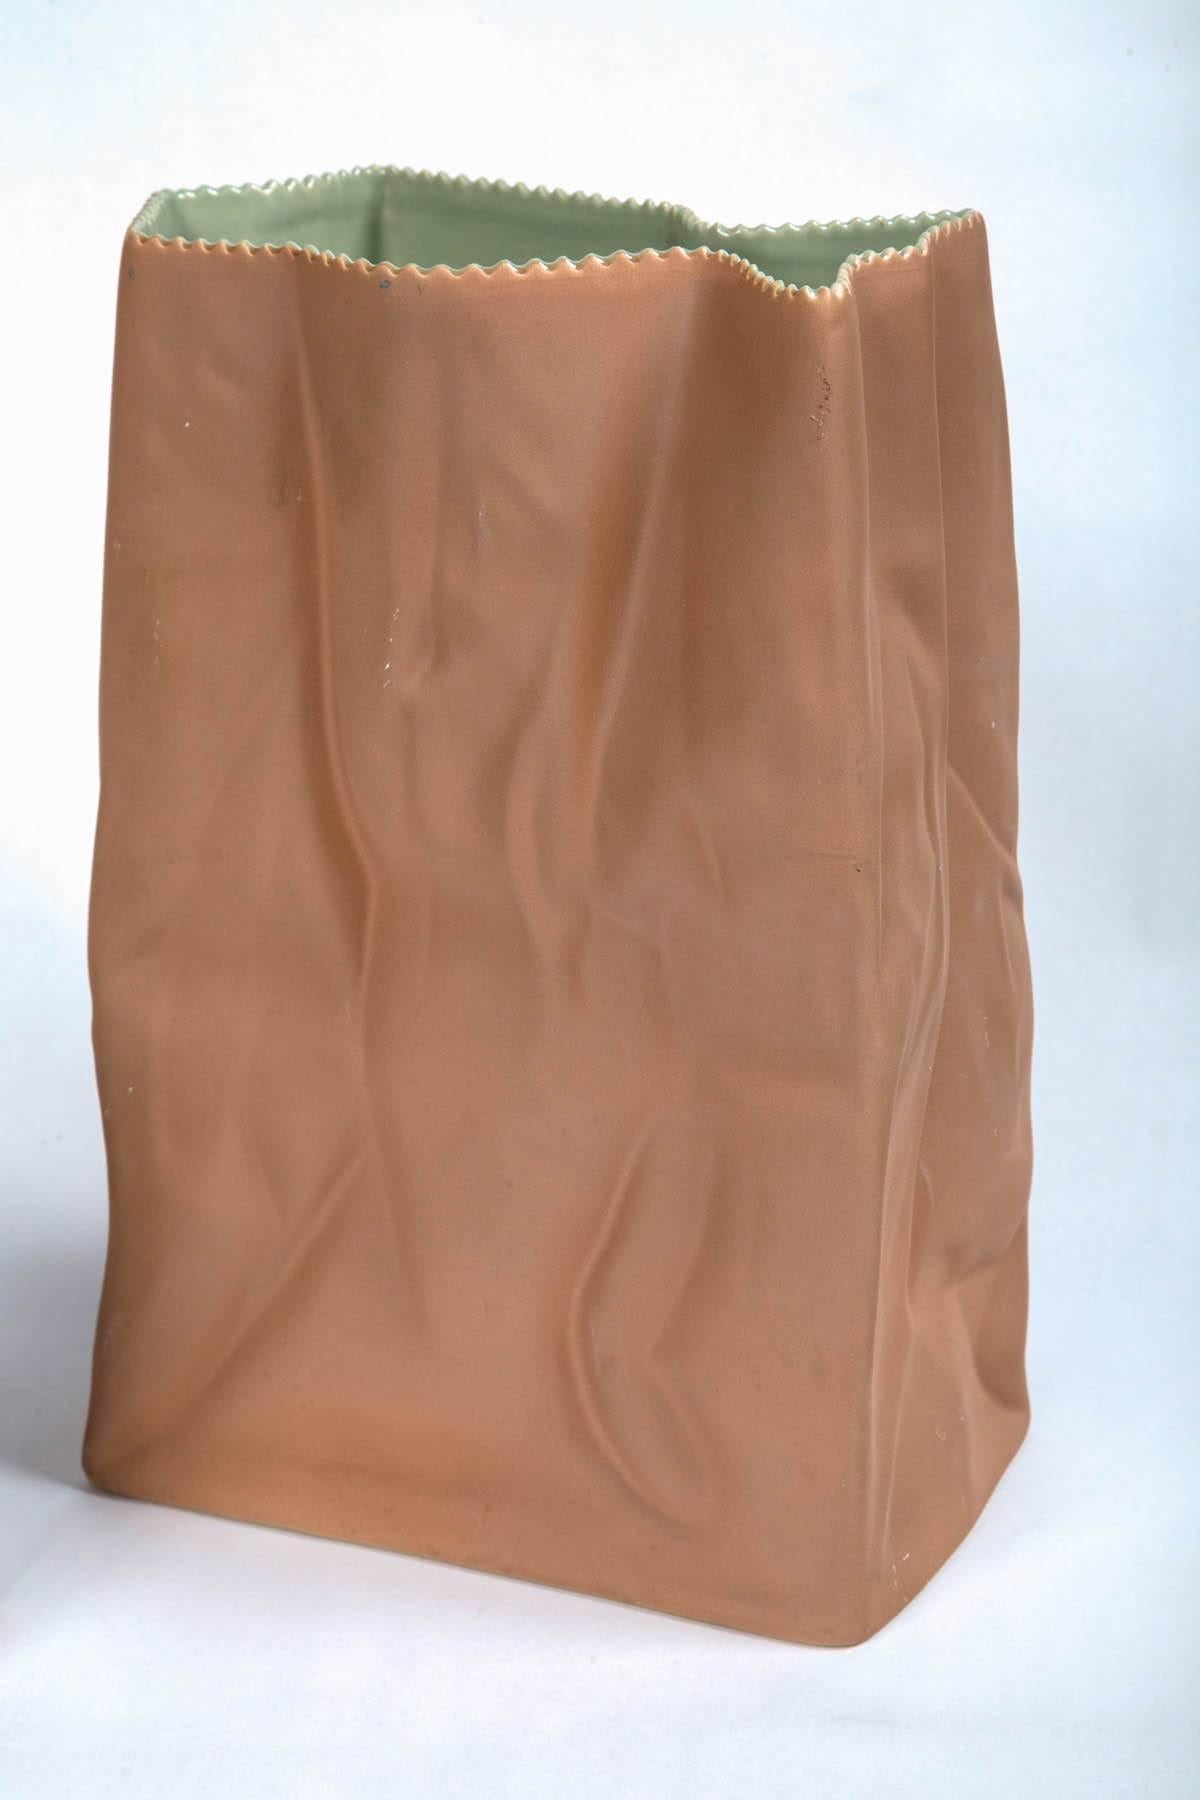 vintage rosenthal paper bag vase